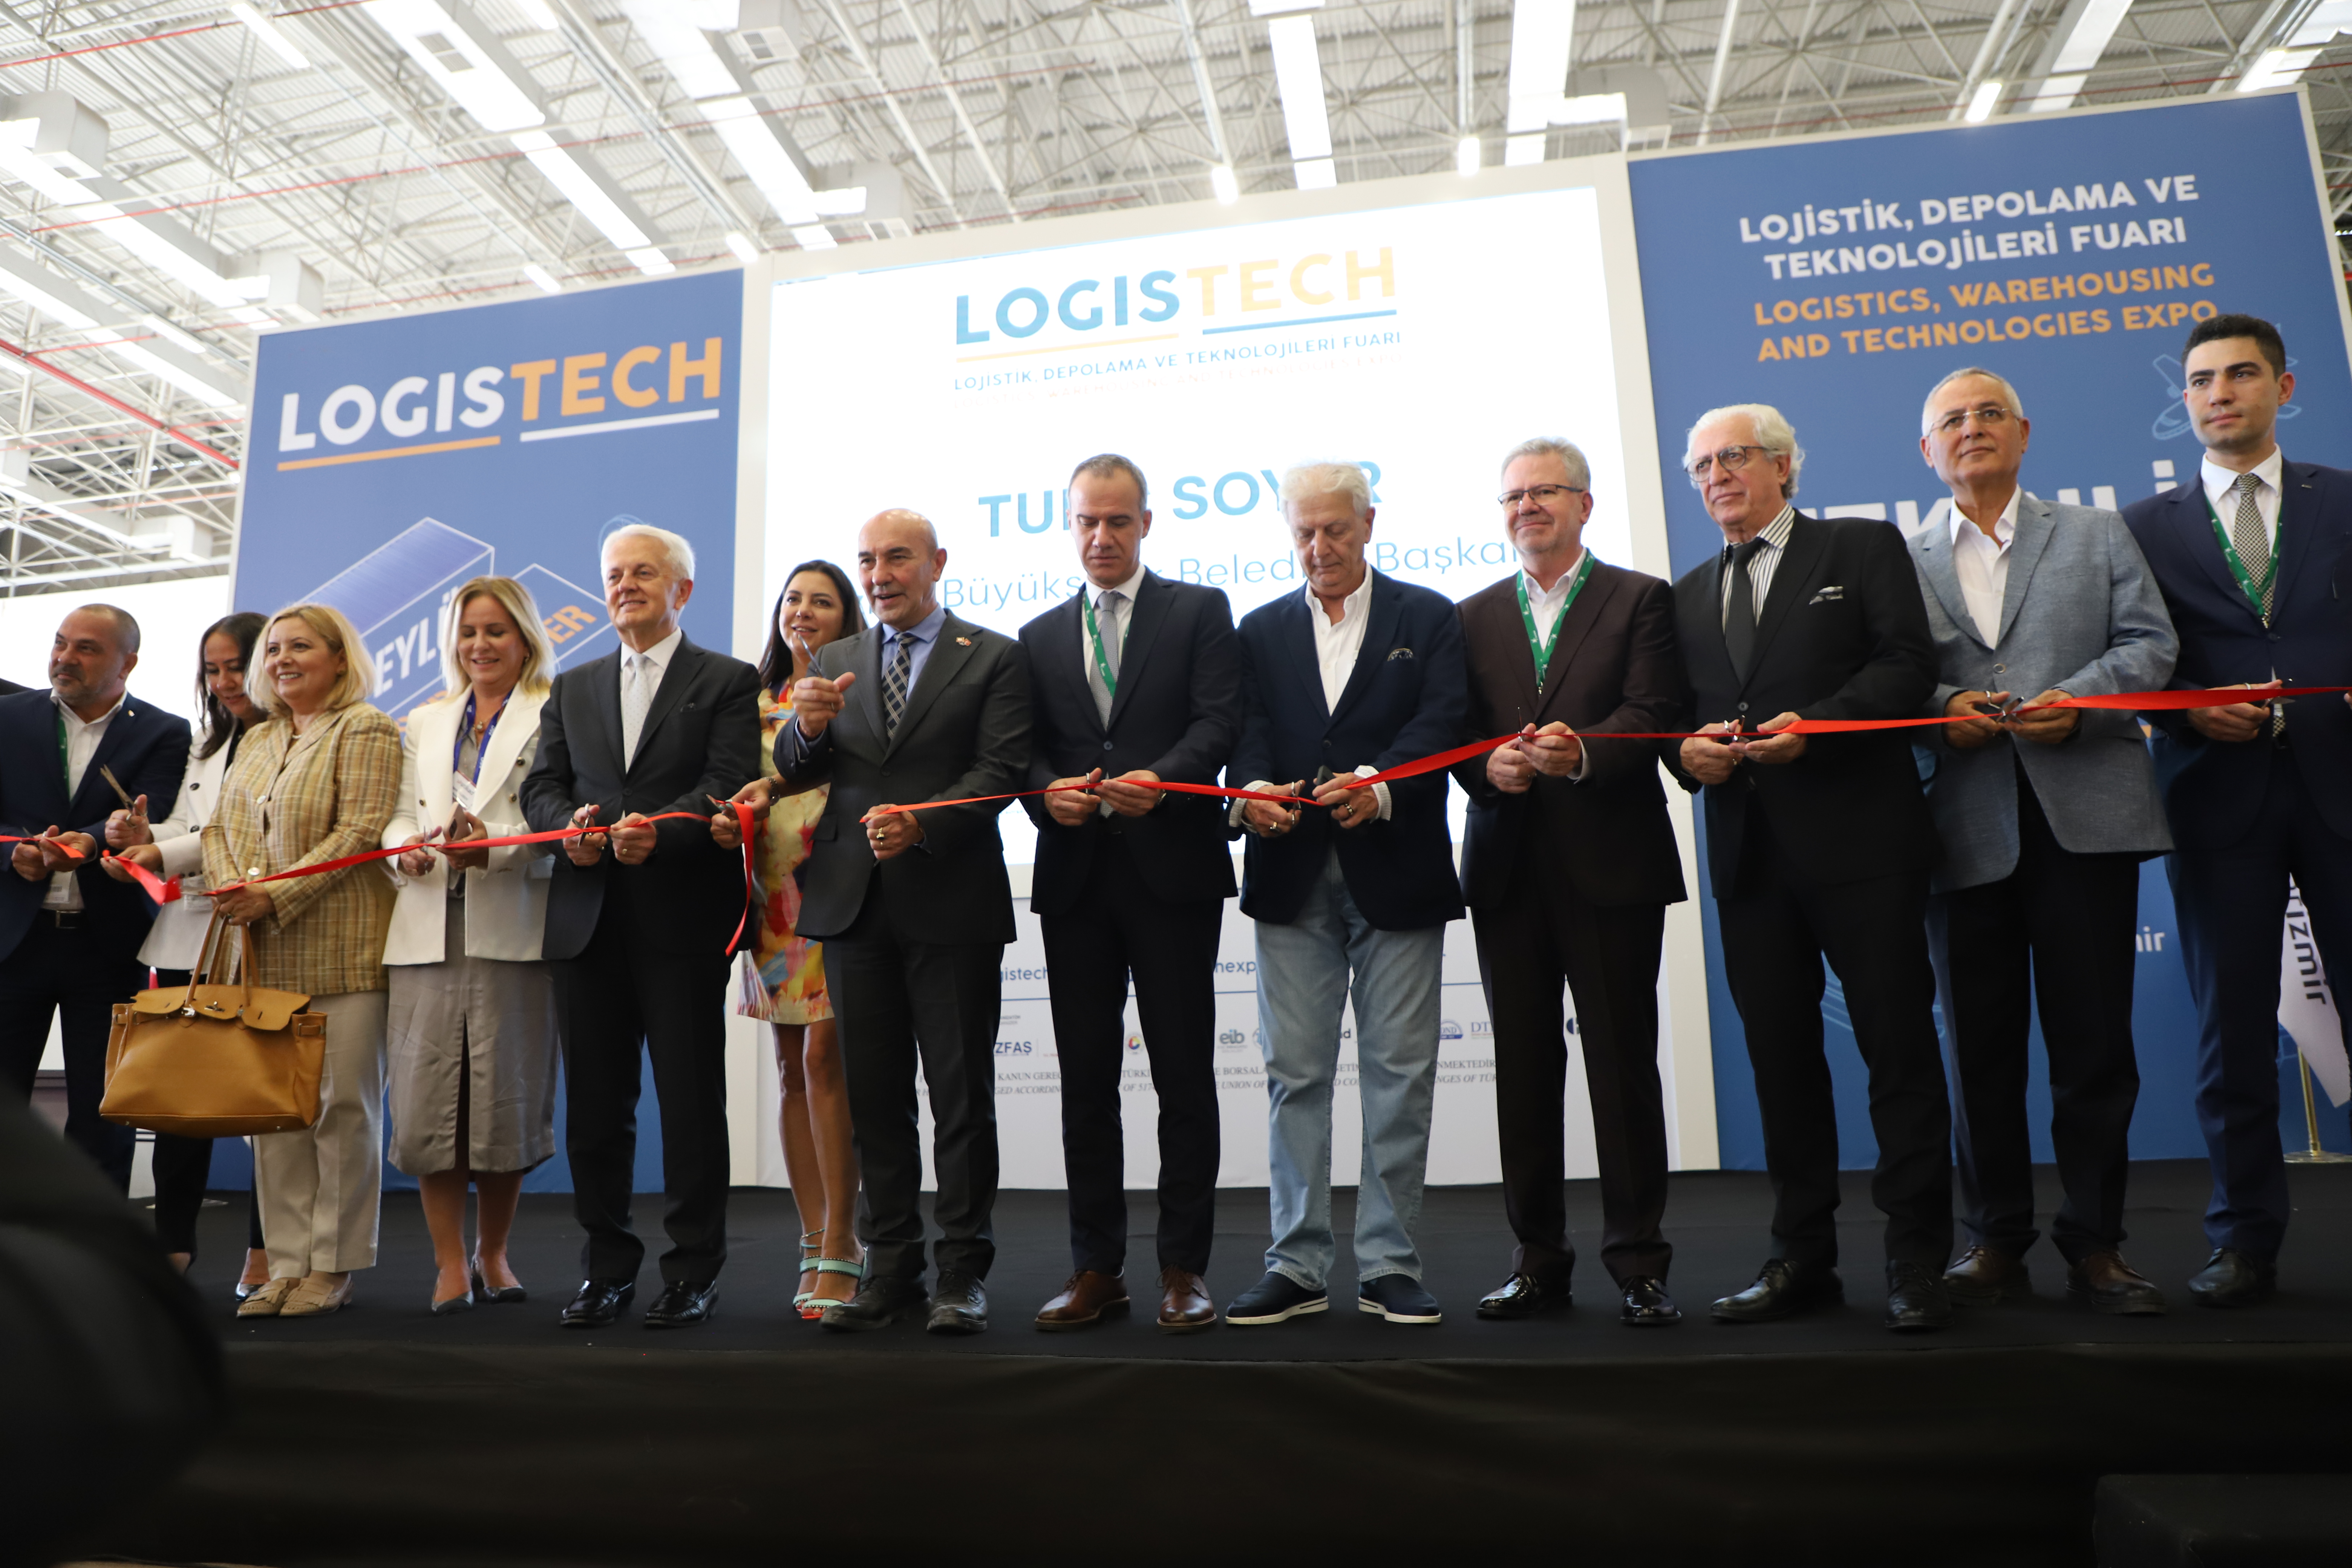 Logistech Lojistik, Depolama ve Teknolojileri Fuarı 2022